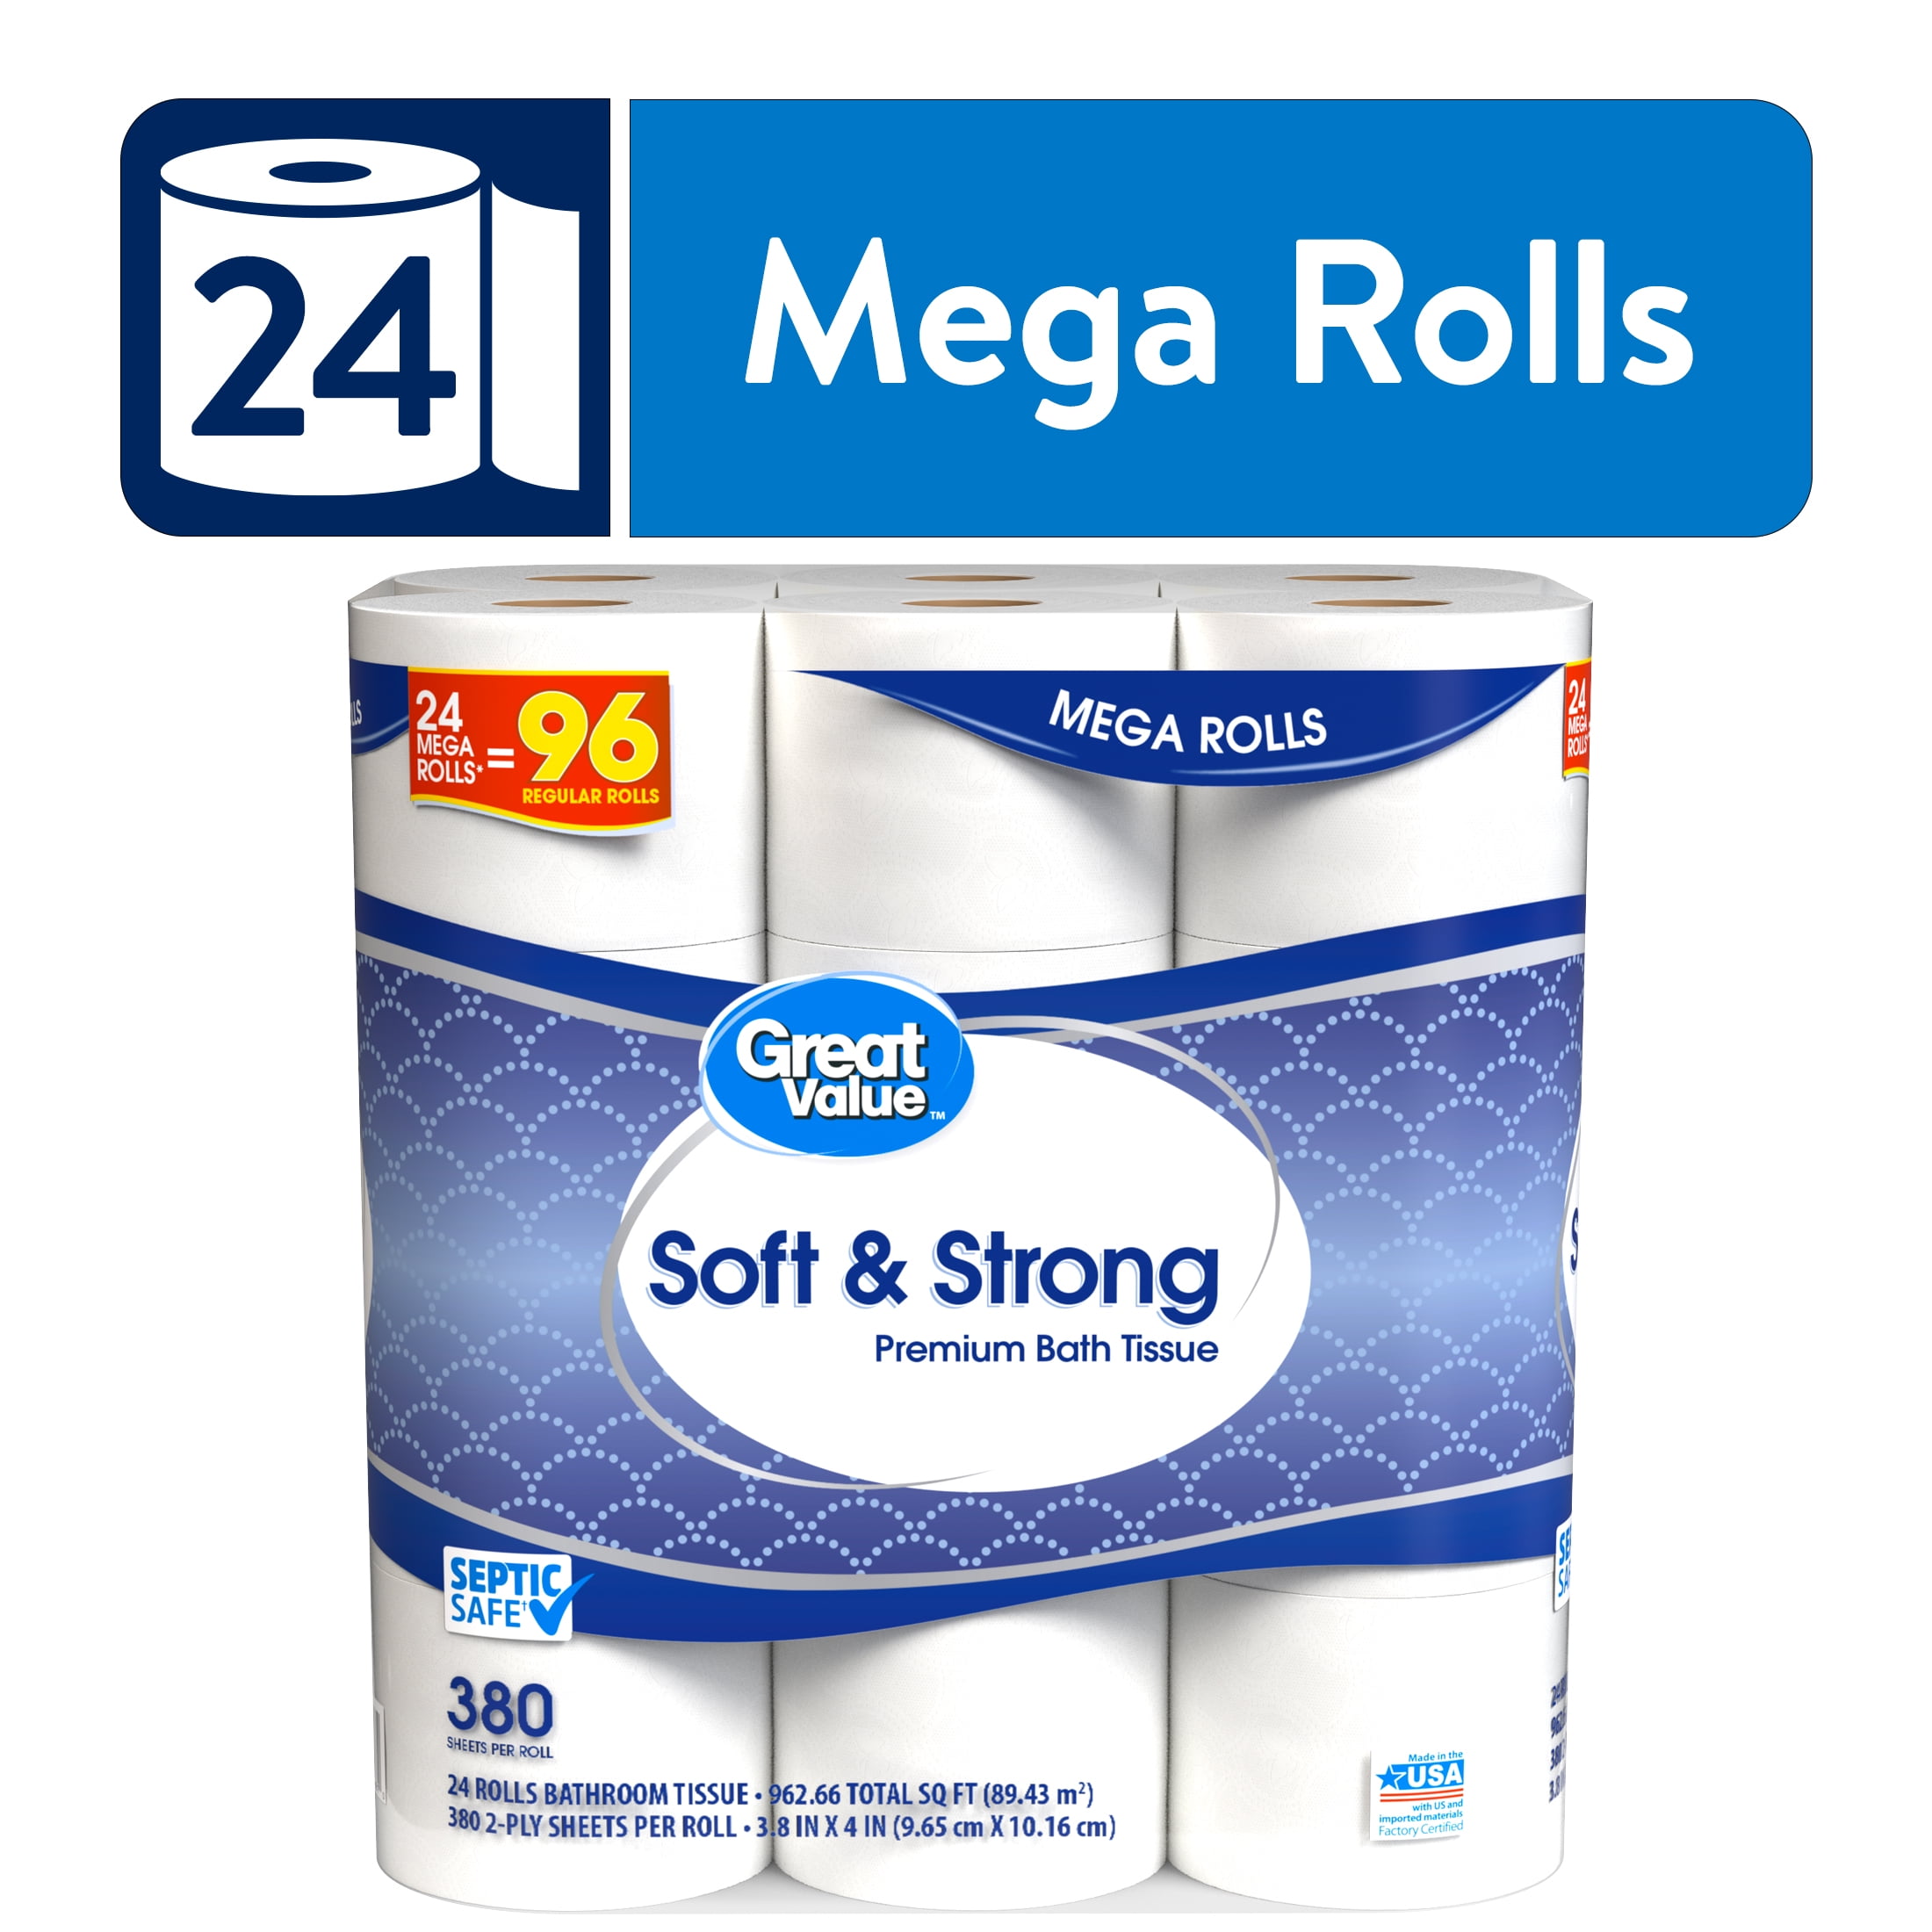 Great Value Soft & Strong Premium Toilet Paper, 24 Mega Rolls - Walmart.com